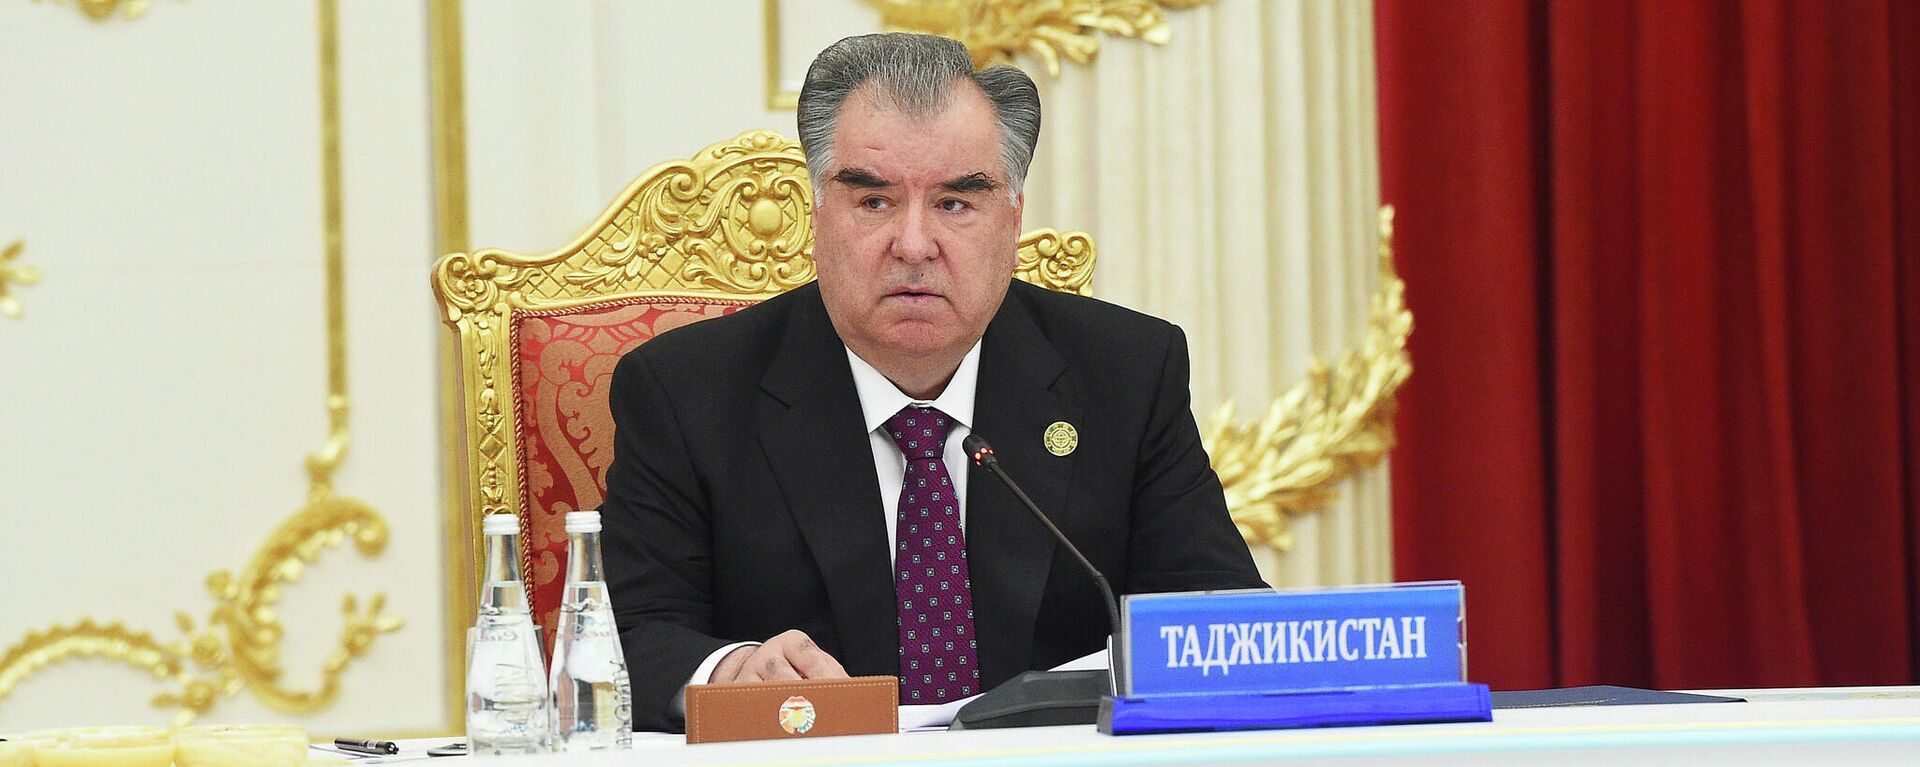 Президент Таджикистана Эмомали Рахмон - Sputnik Таджикистан, 1920, 15.10.2021